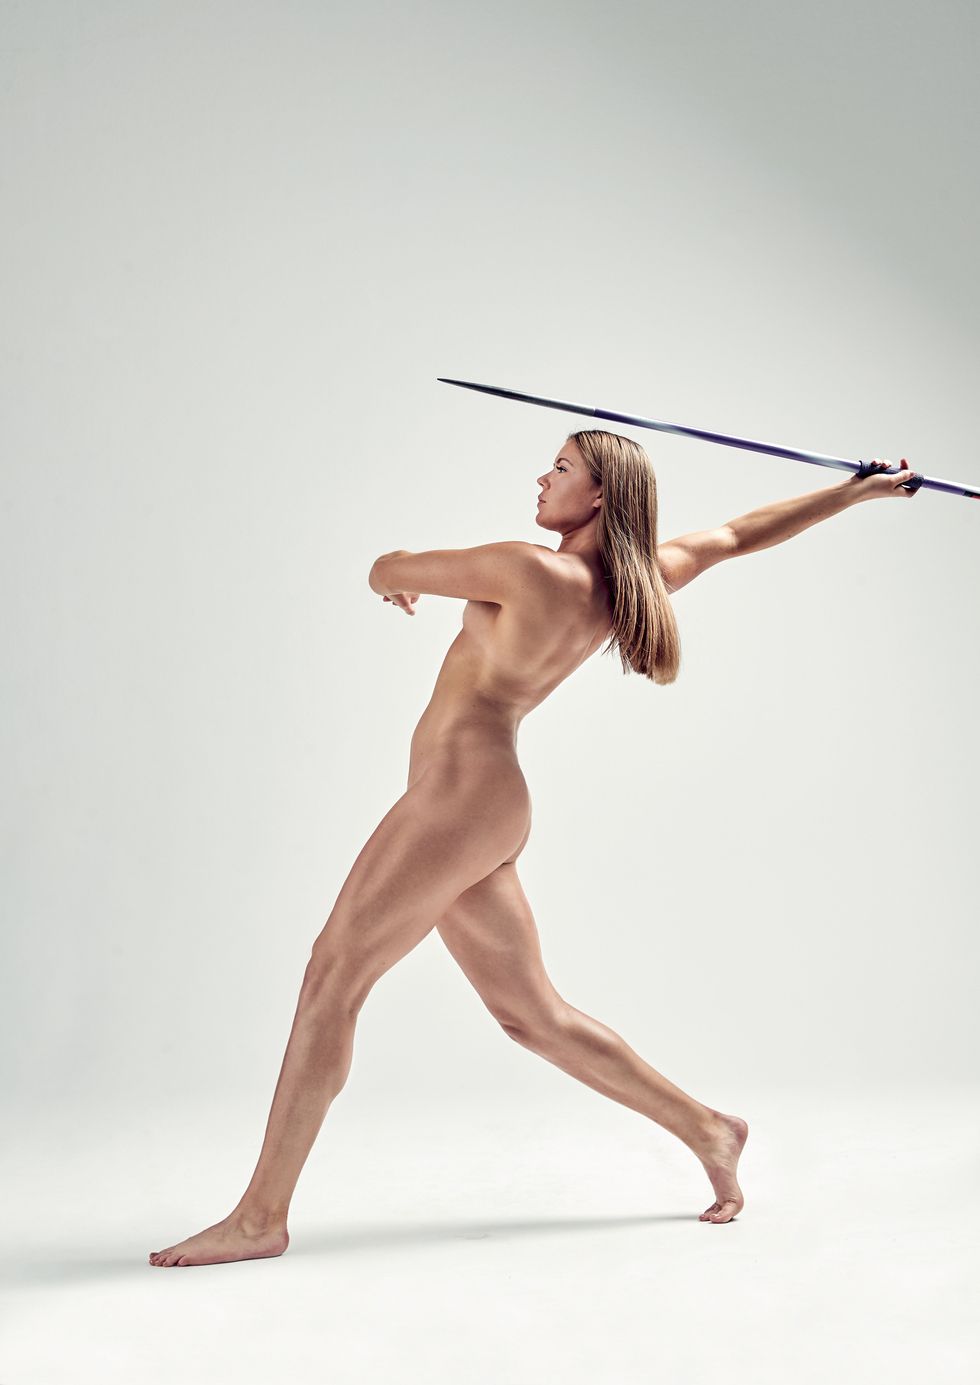 Standing, Leg, Arm, Muscle, Photography, Art model, Human leg, Dancer, 